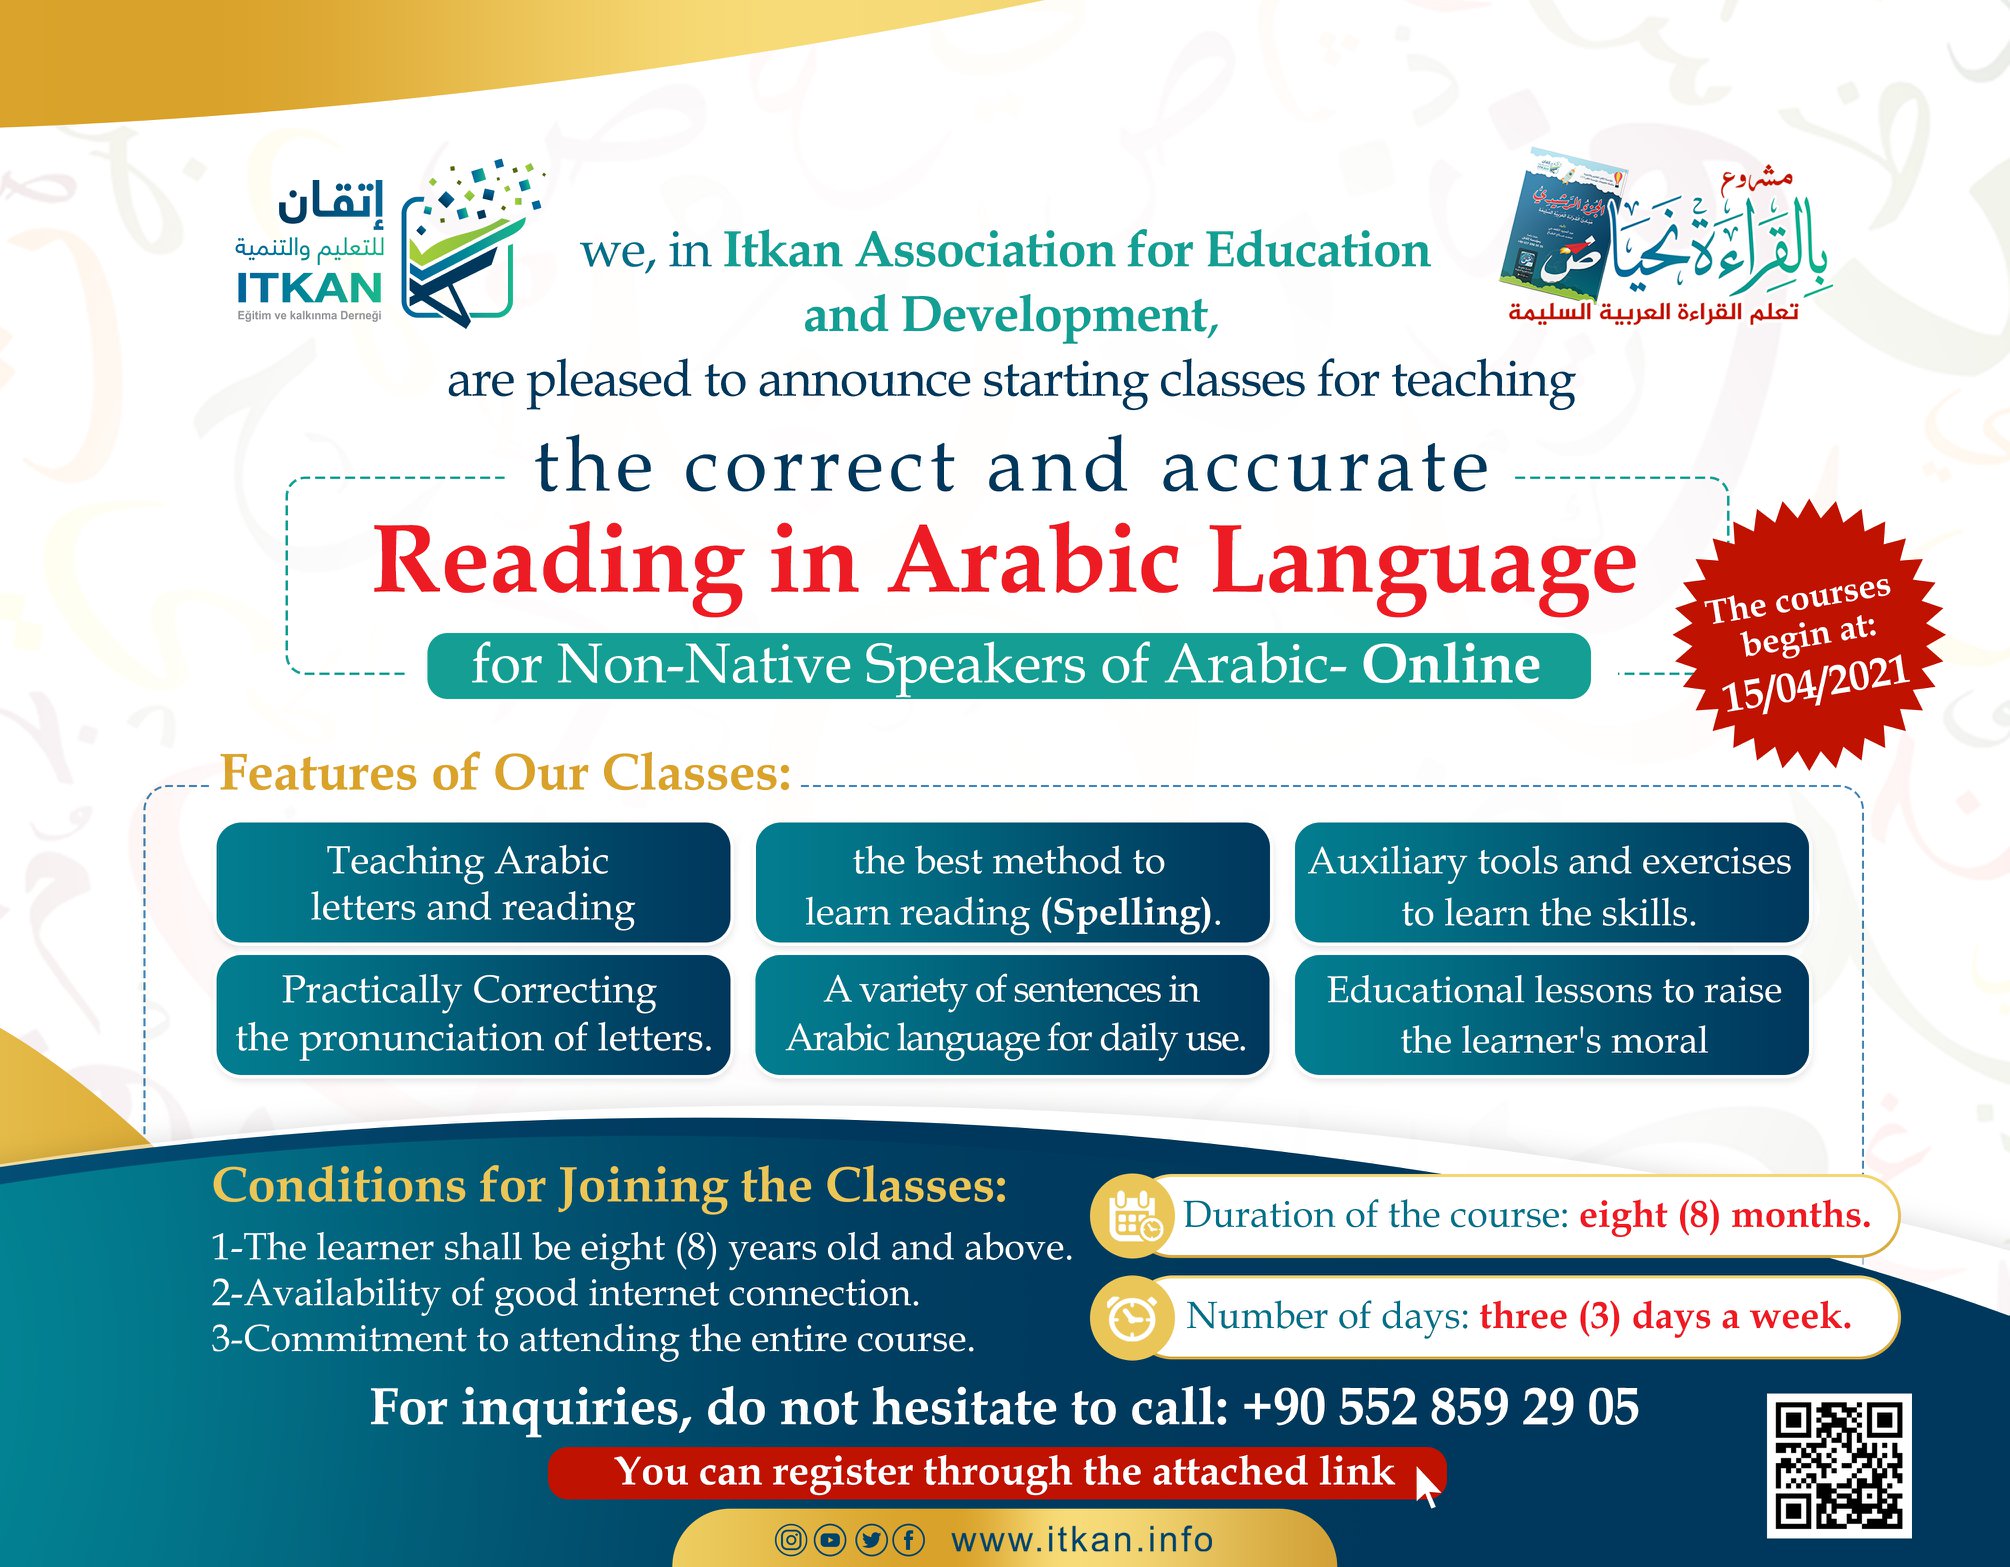 تعليم القراءة العربية والقرآن الكريم للناطقين بغير العربية - Teaching the correct Arabic Reading and Quran for Non-Native Speakers of Arabic- Online.